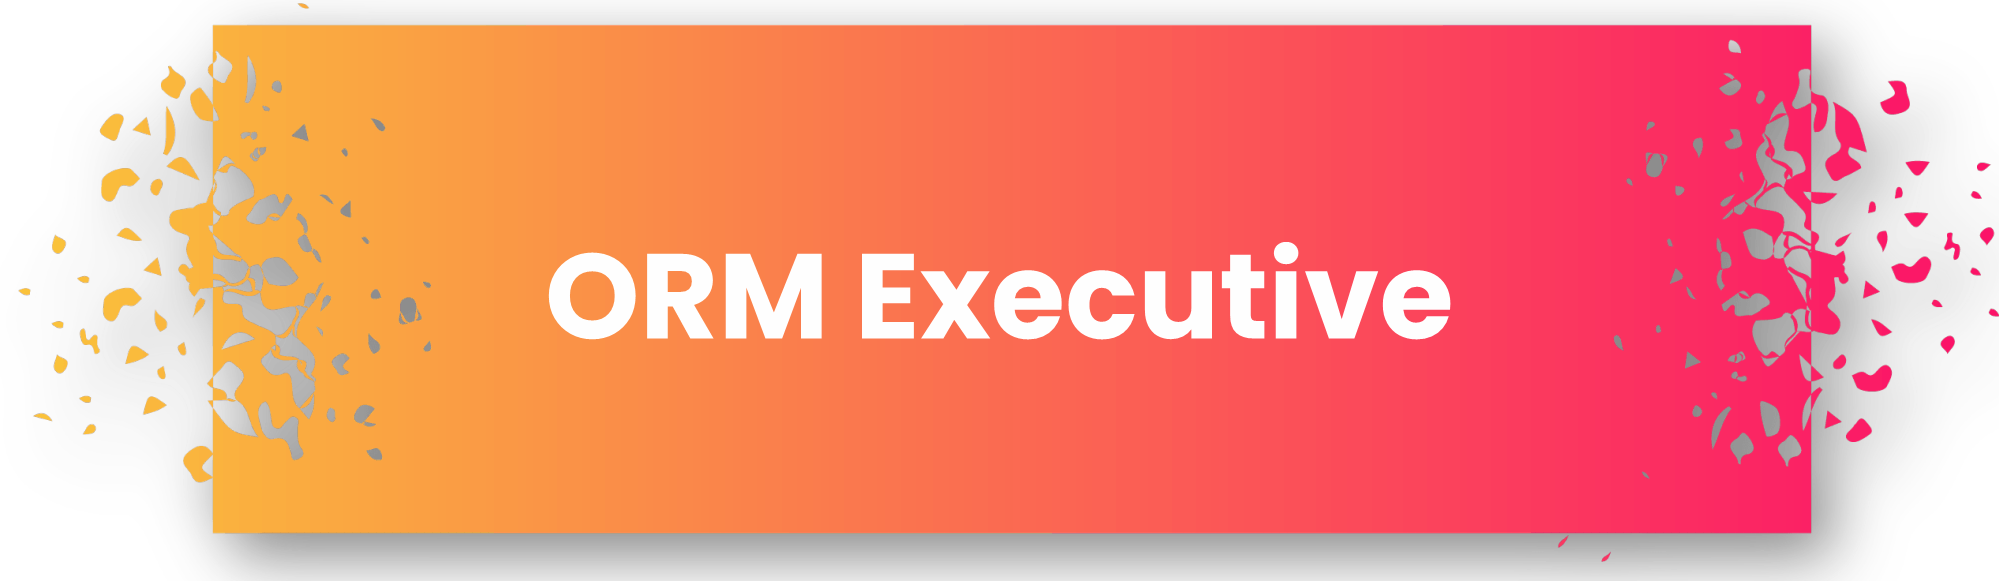 ORM Executive